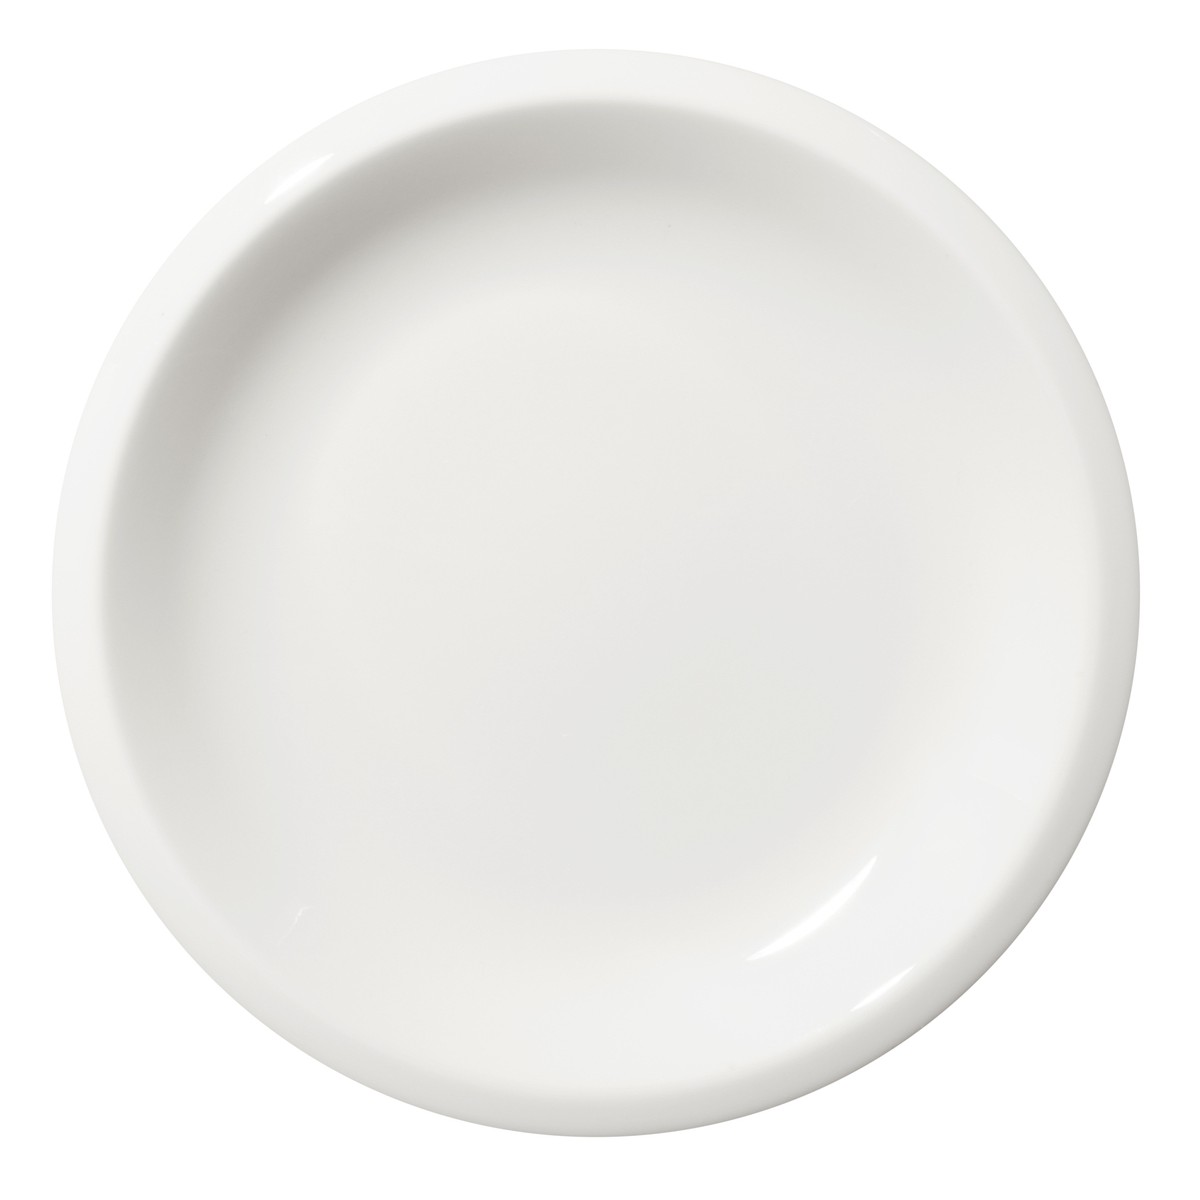 Plate Raami – white porcelain – Ø20 cm